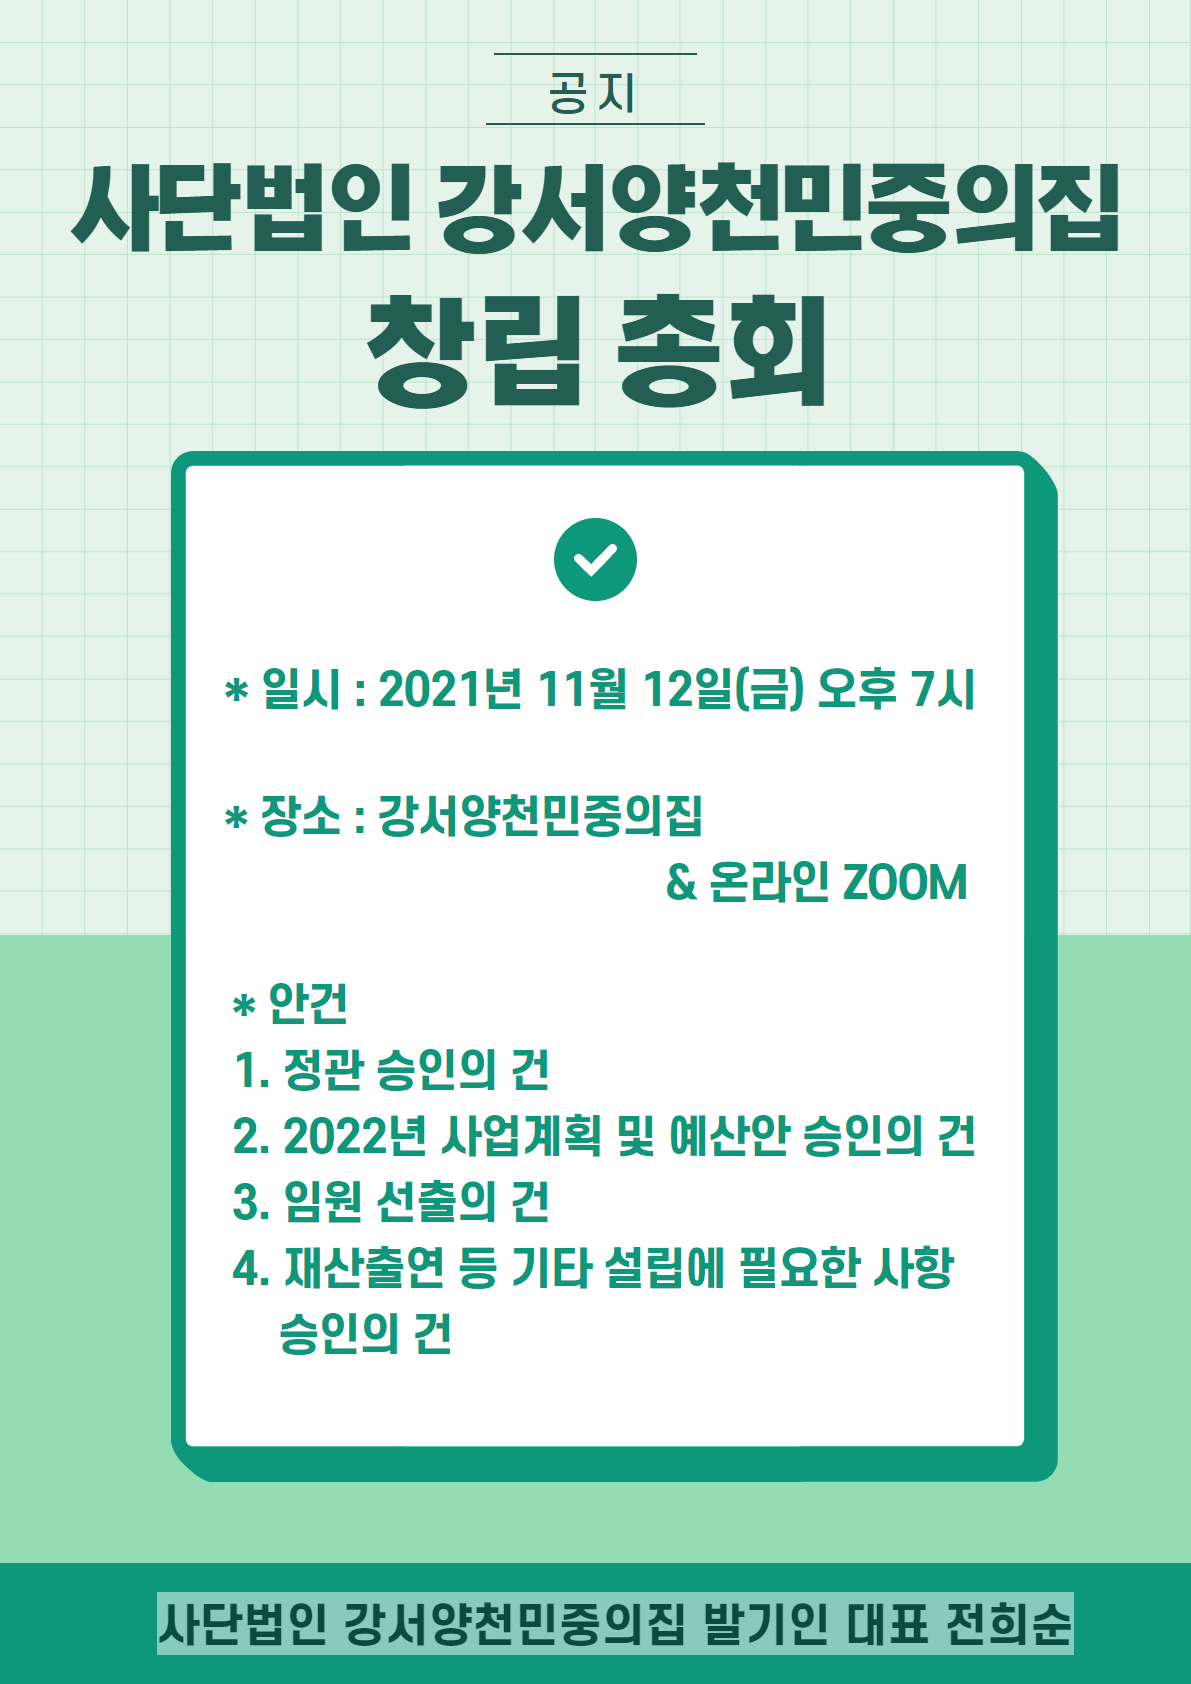 0927-설립 총회 웹자보.png